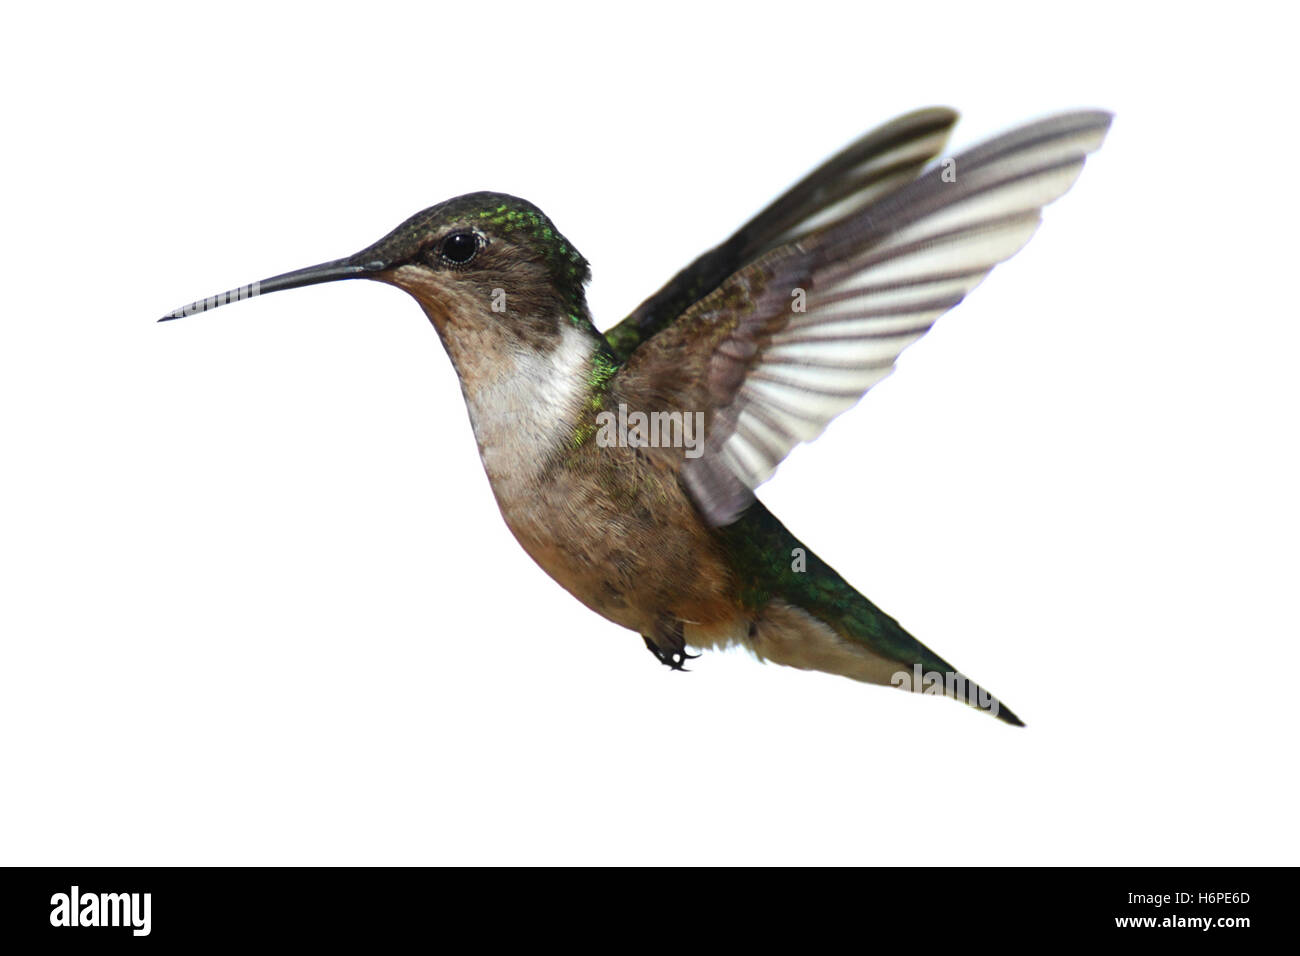 Aves silvestres aisladas colibrí blanco aislado de la naturaleza animal femenino avifauna aves silvestres plumas de ala de colibrí silvestre Foto de stock